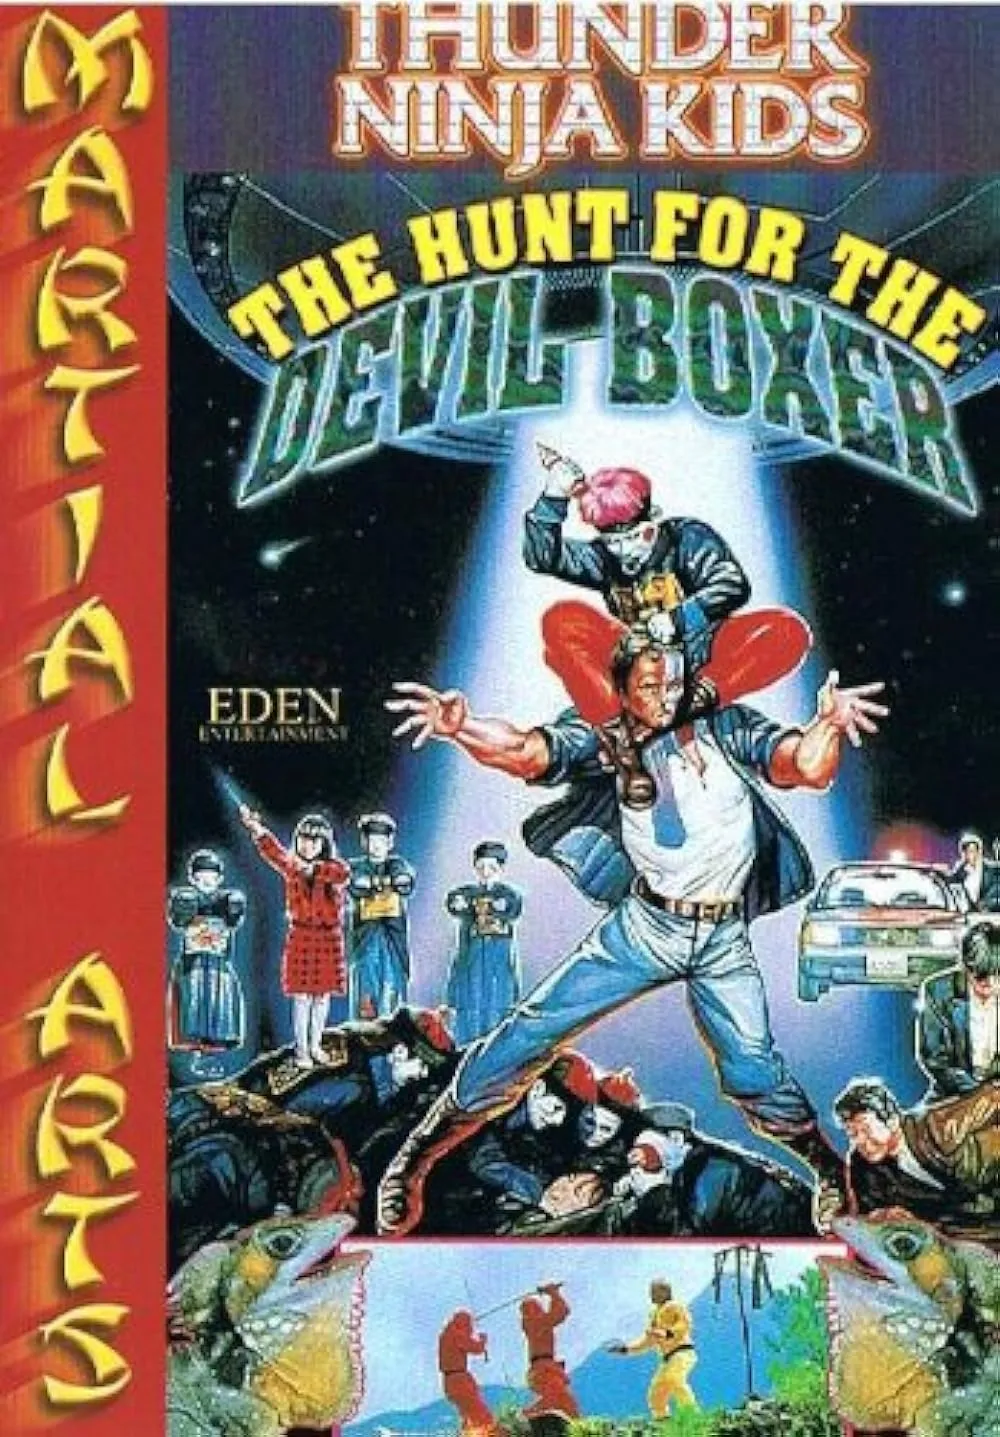     Thunder Ninja Kids: The Hunt for the Devil Boxer